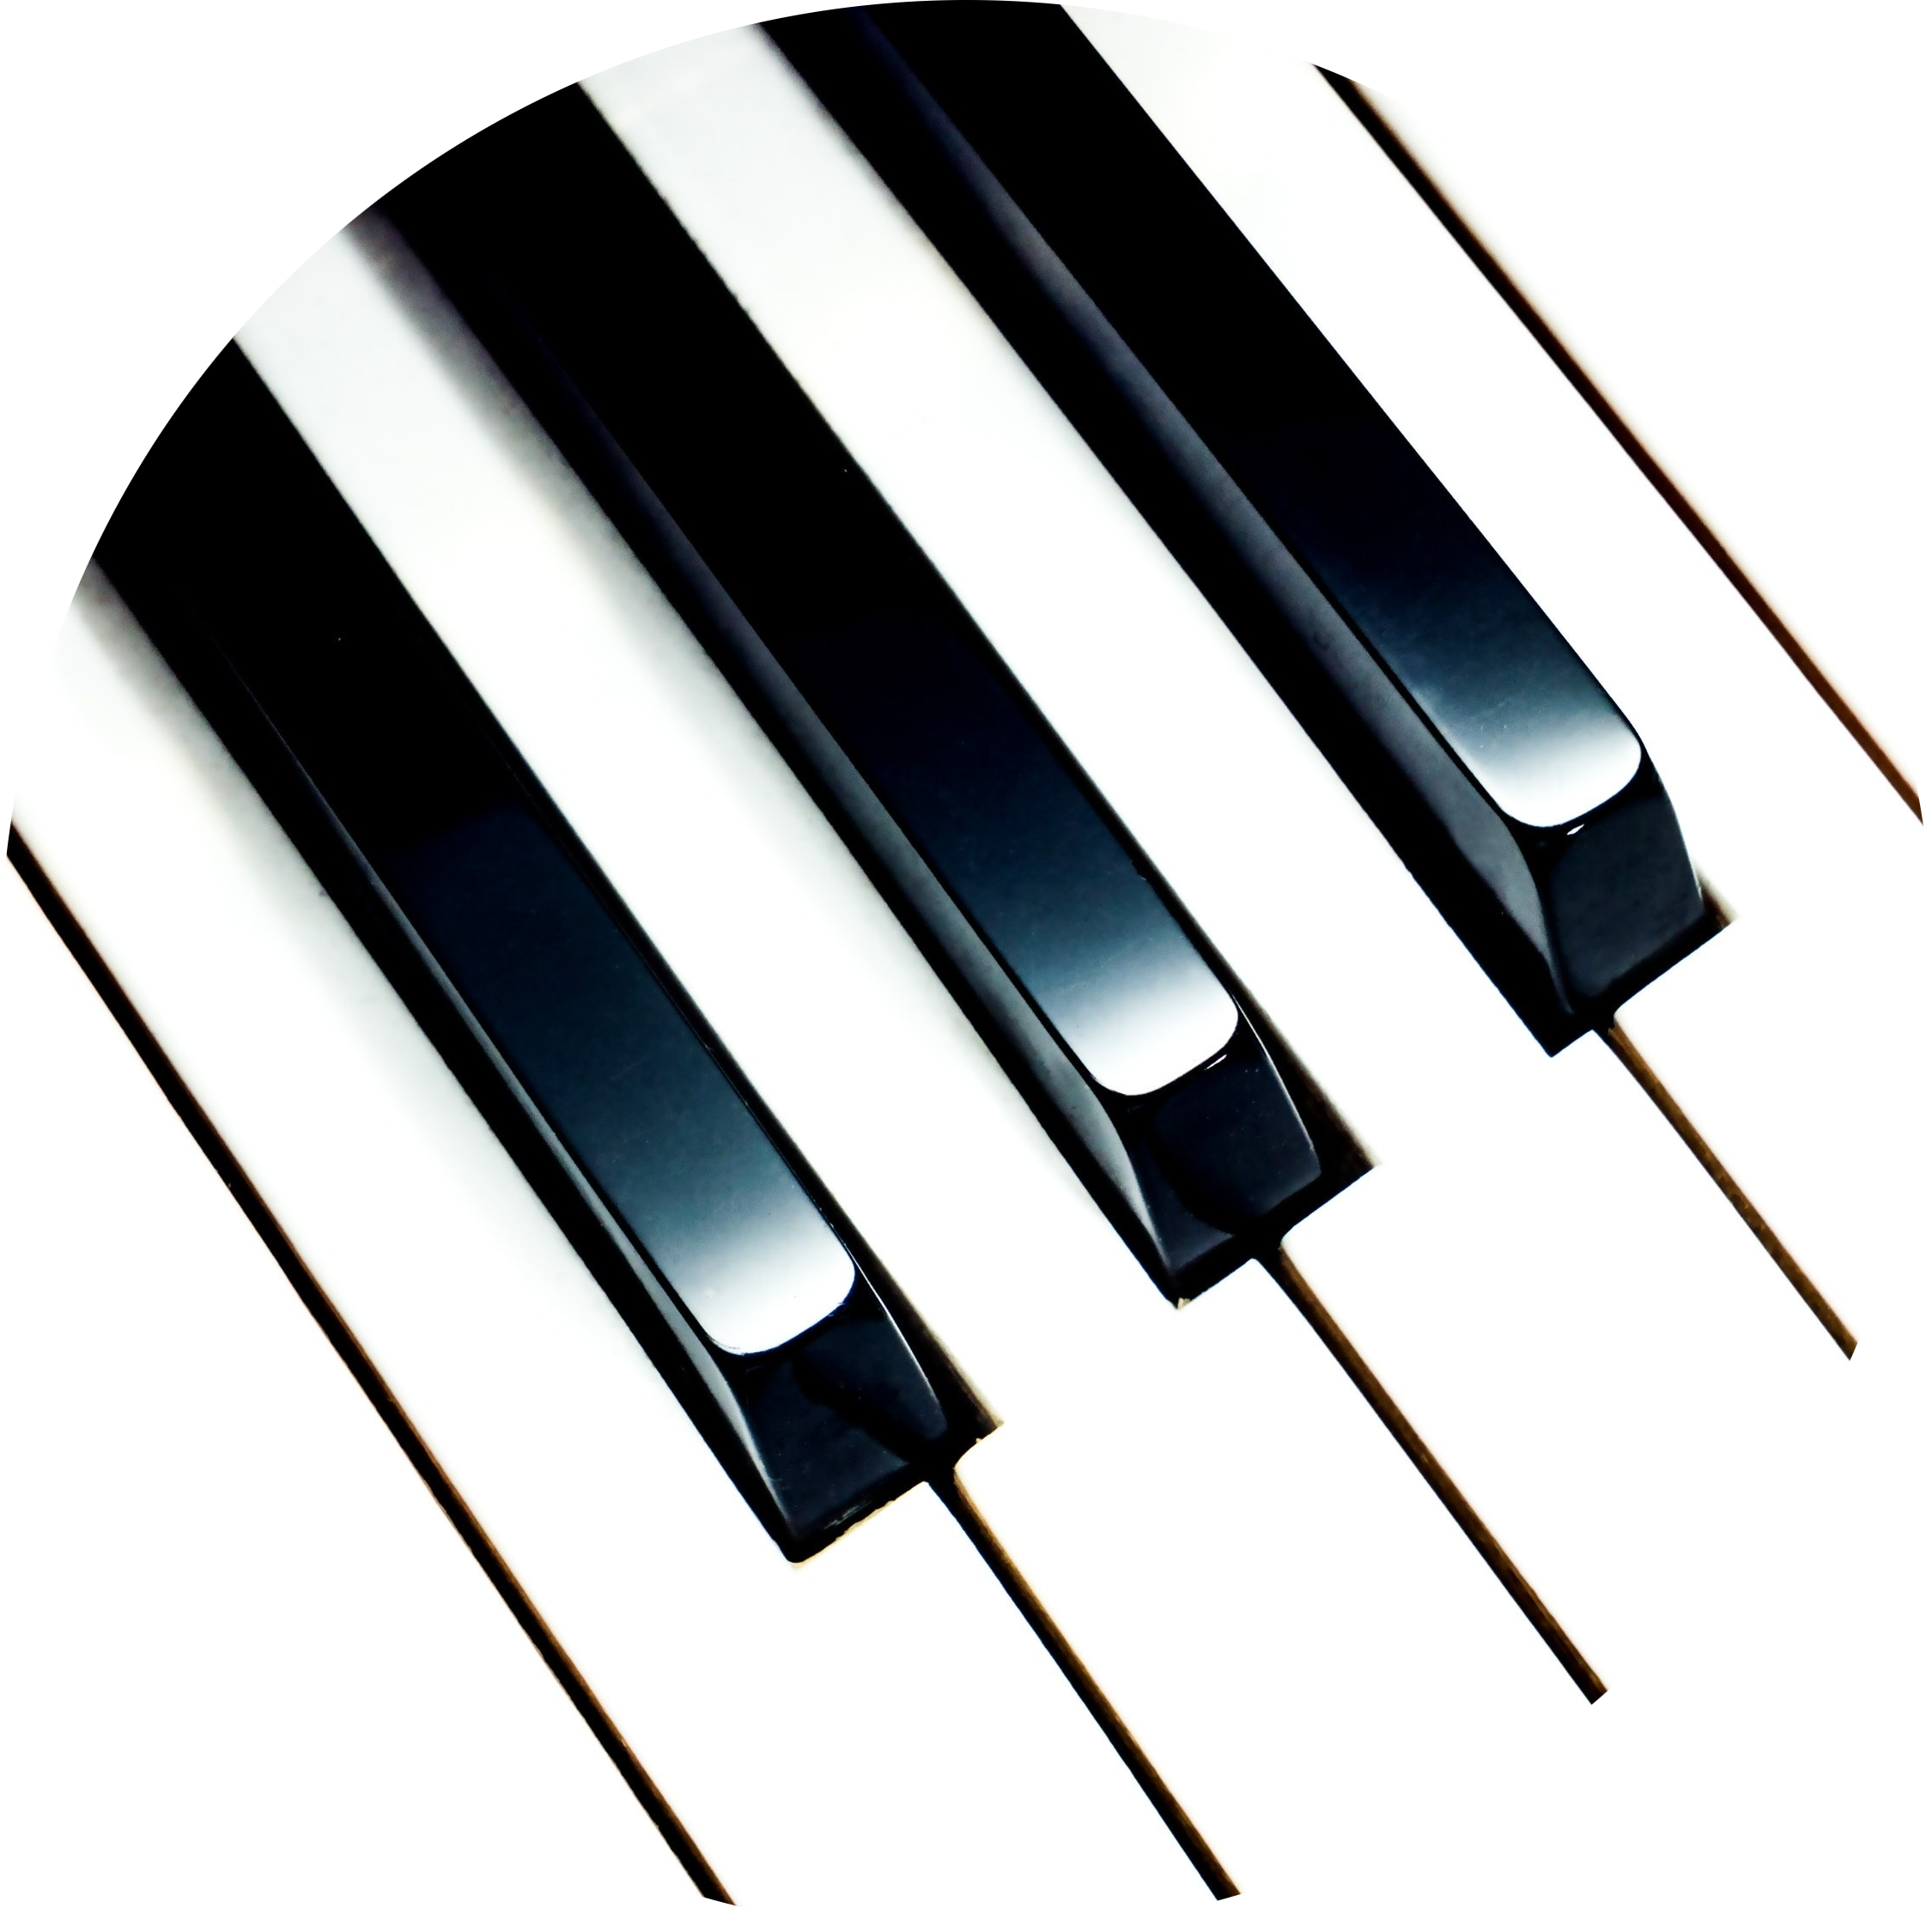 A stock photo of piano keys.